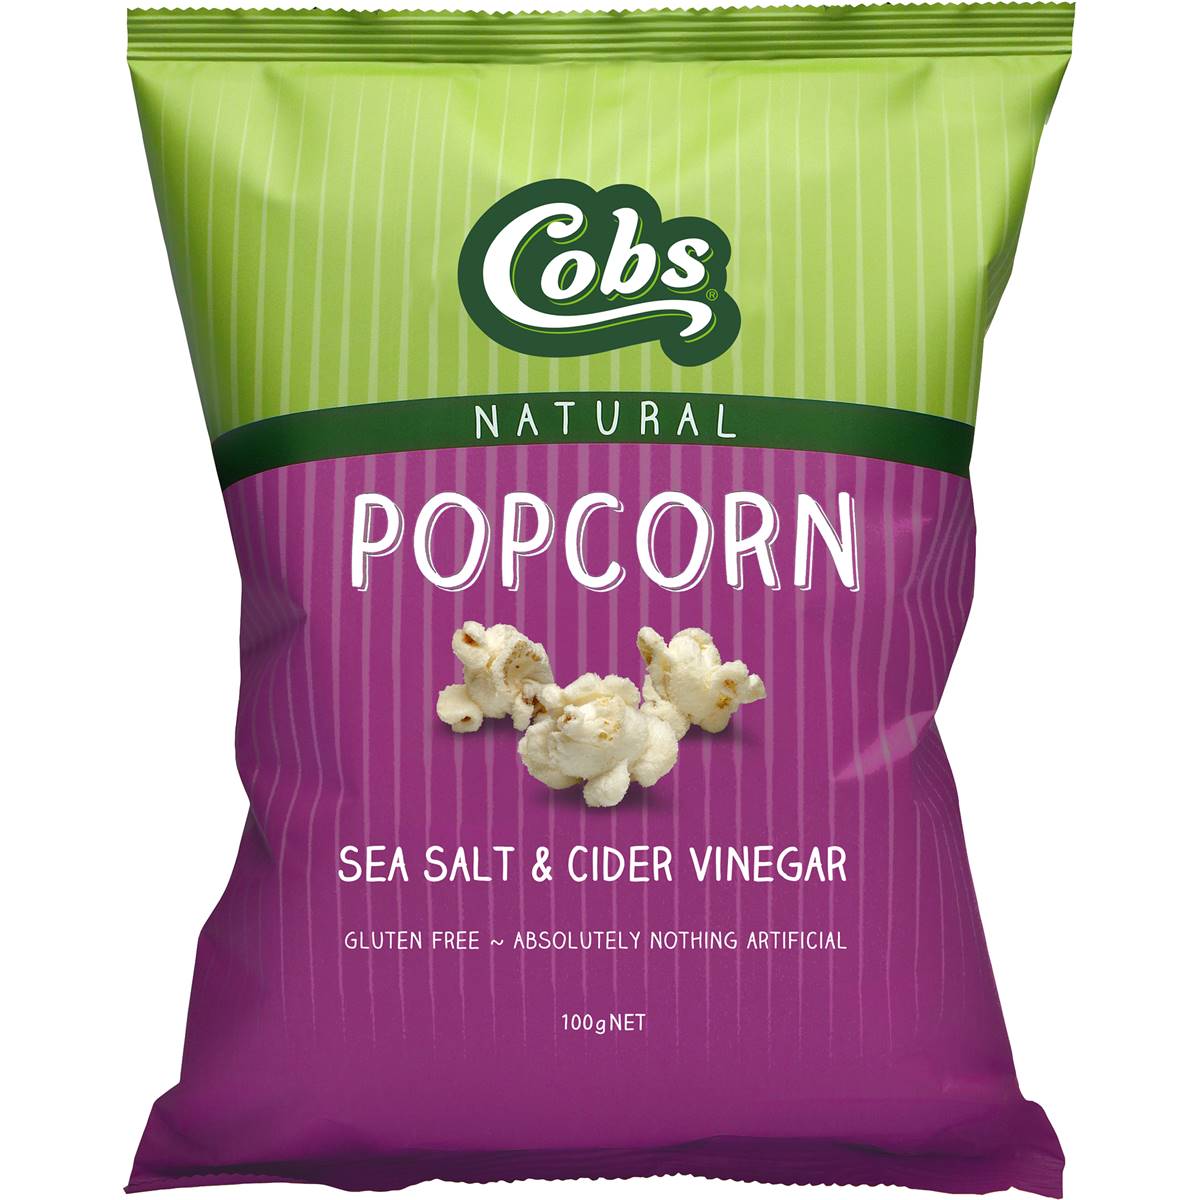 Calories in Cobs Popcorn Sea Salt & Cider Vinegar Gluten Free